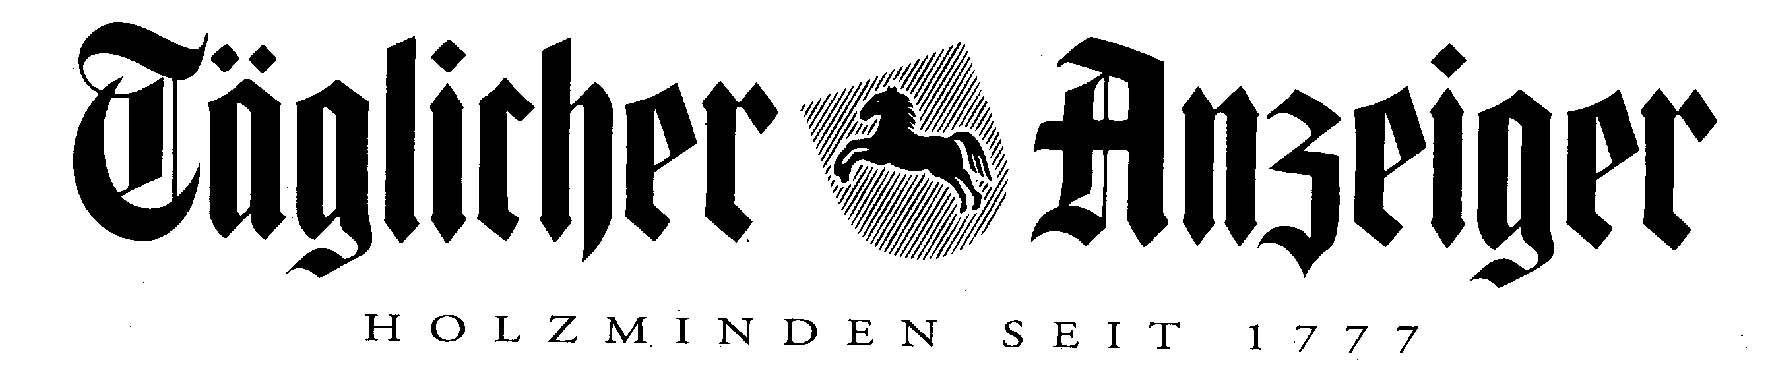 Tglicher Anzeiger_Logo